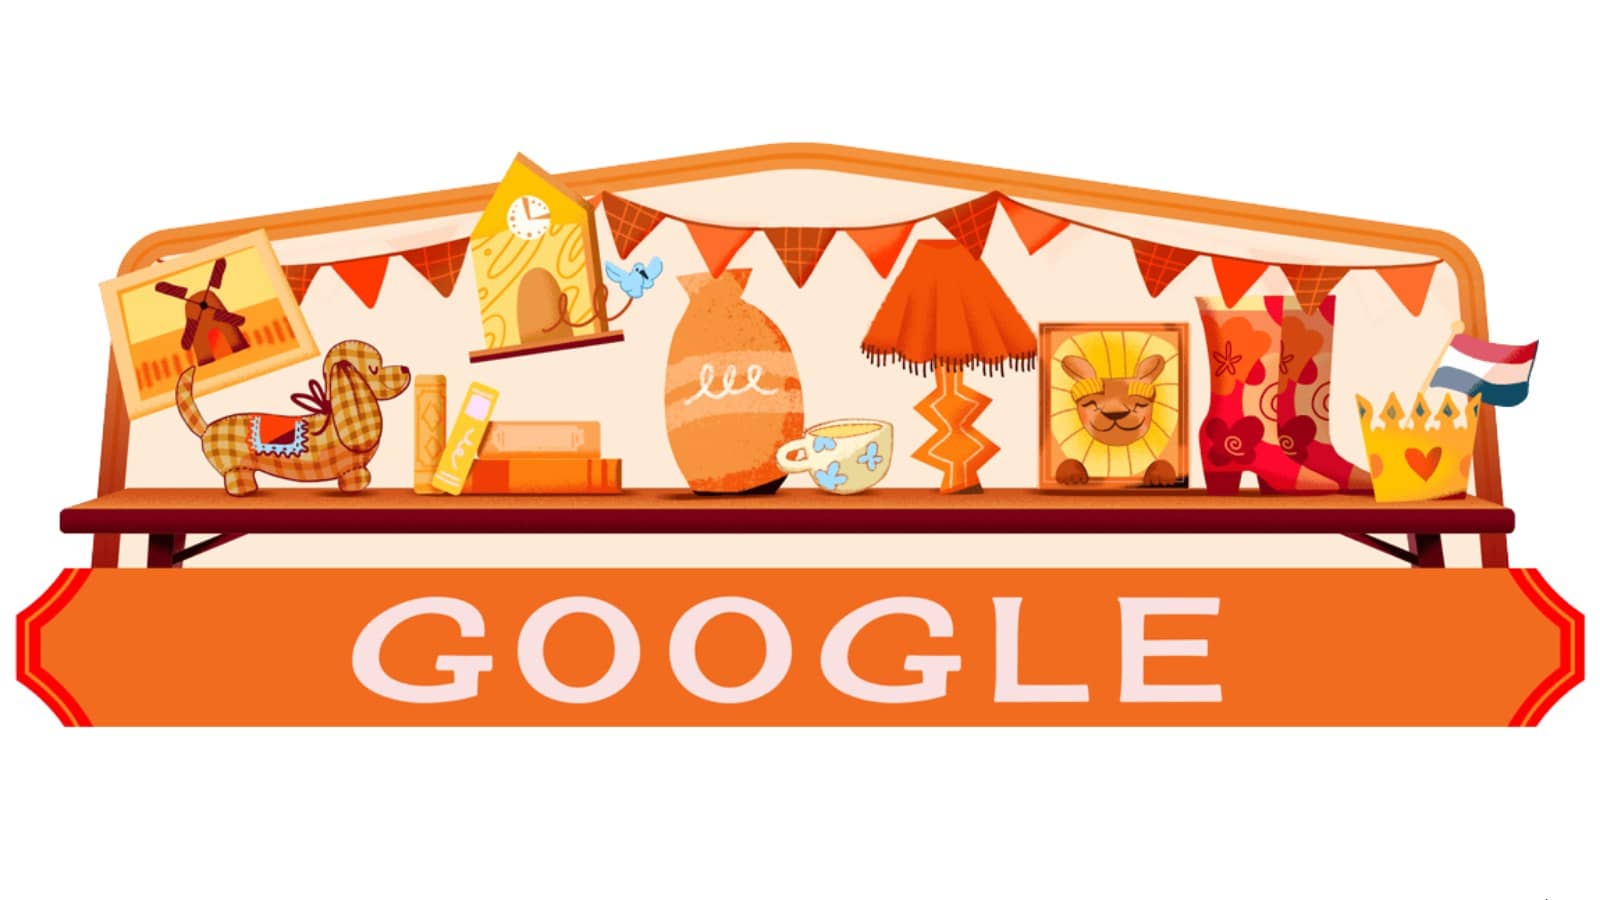 Doodle Google : le Koningsdag ou Jour du Roi aux Pays-Bas